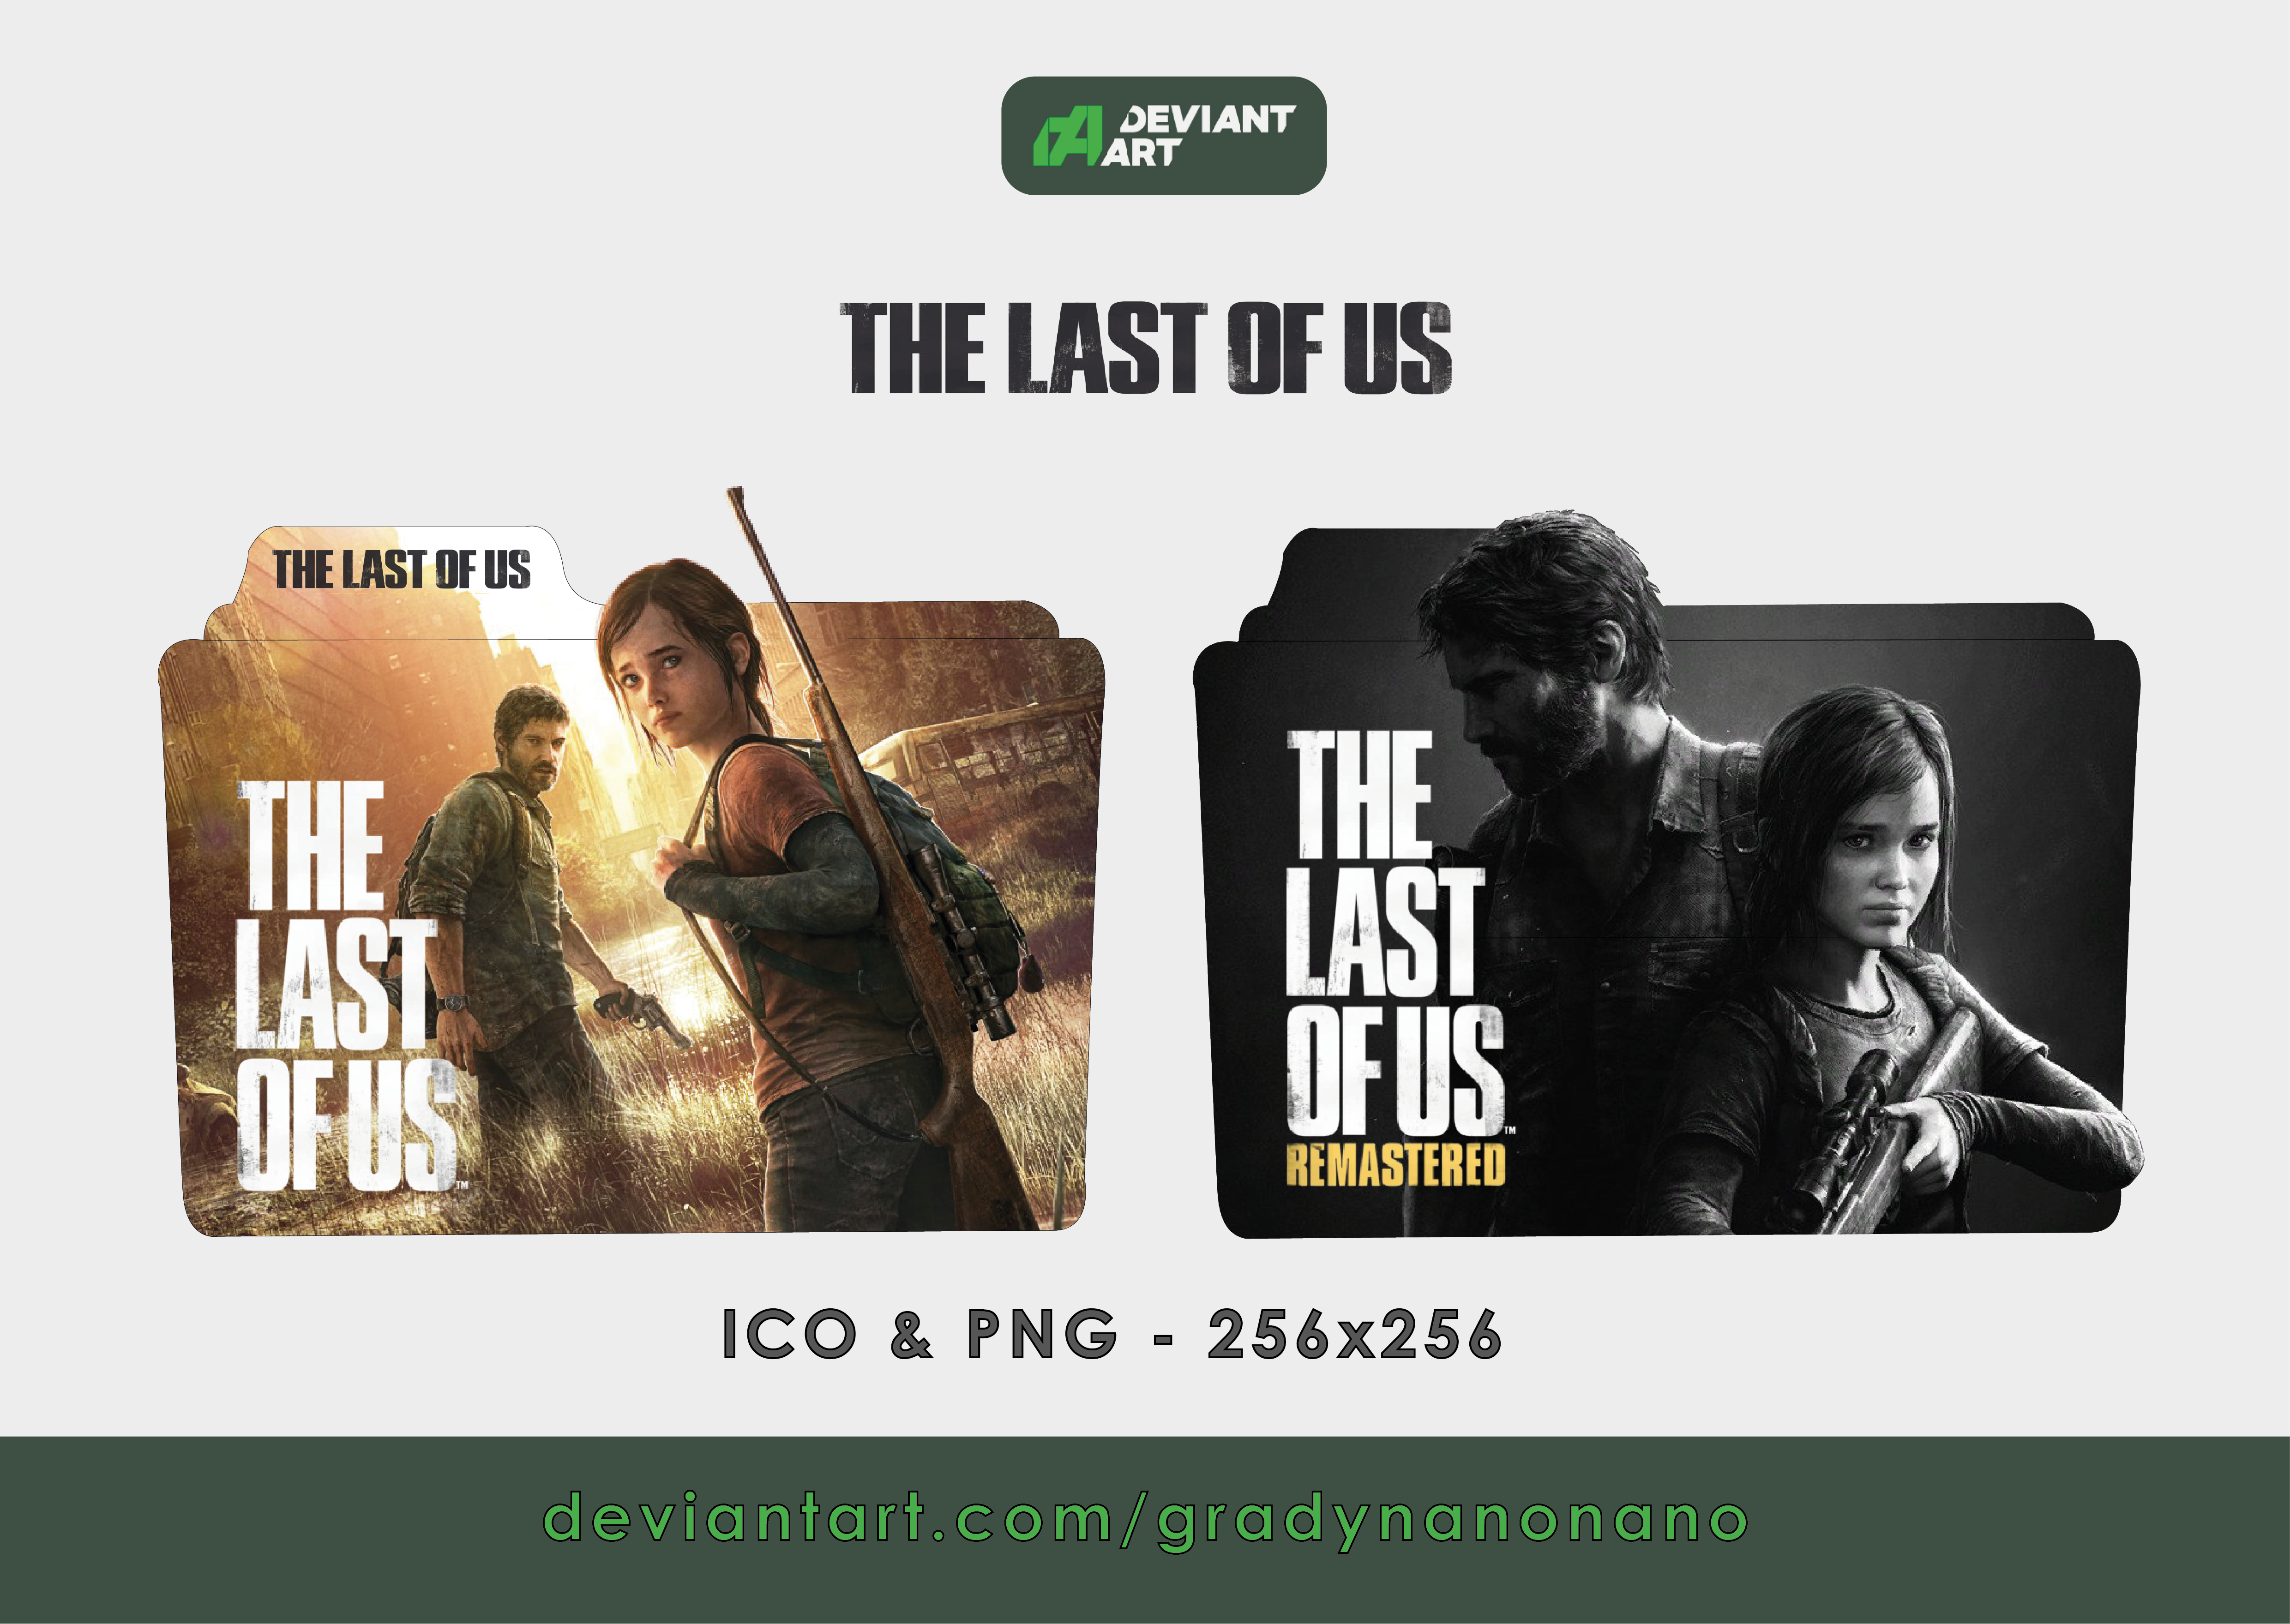 The Last of Us - Part 3 - Advert Version by diamonddead-Art on DeviantArt